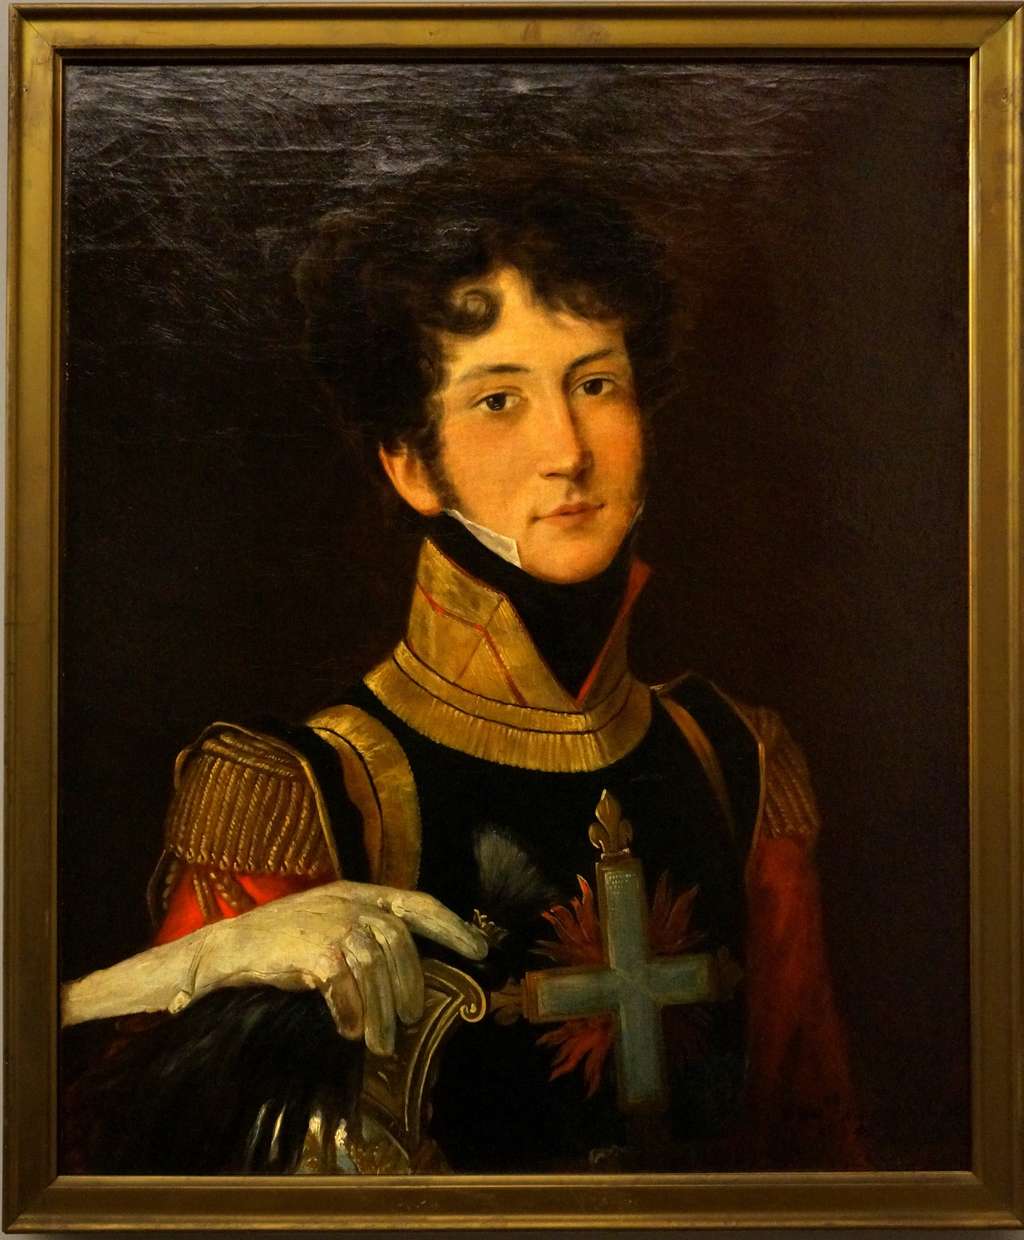 Mousquetaire en uniforme de la première compagnie, en 1815 (anonyme). Musée de l'Armée, Hôtel des Invalides. © RMN-Grand Palais, Thierry Ollivier